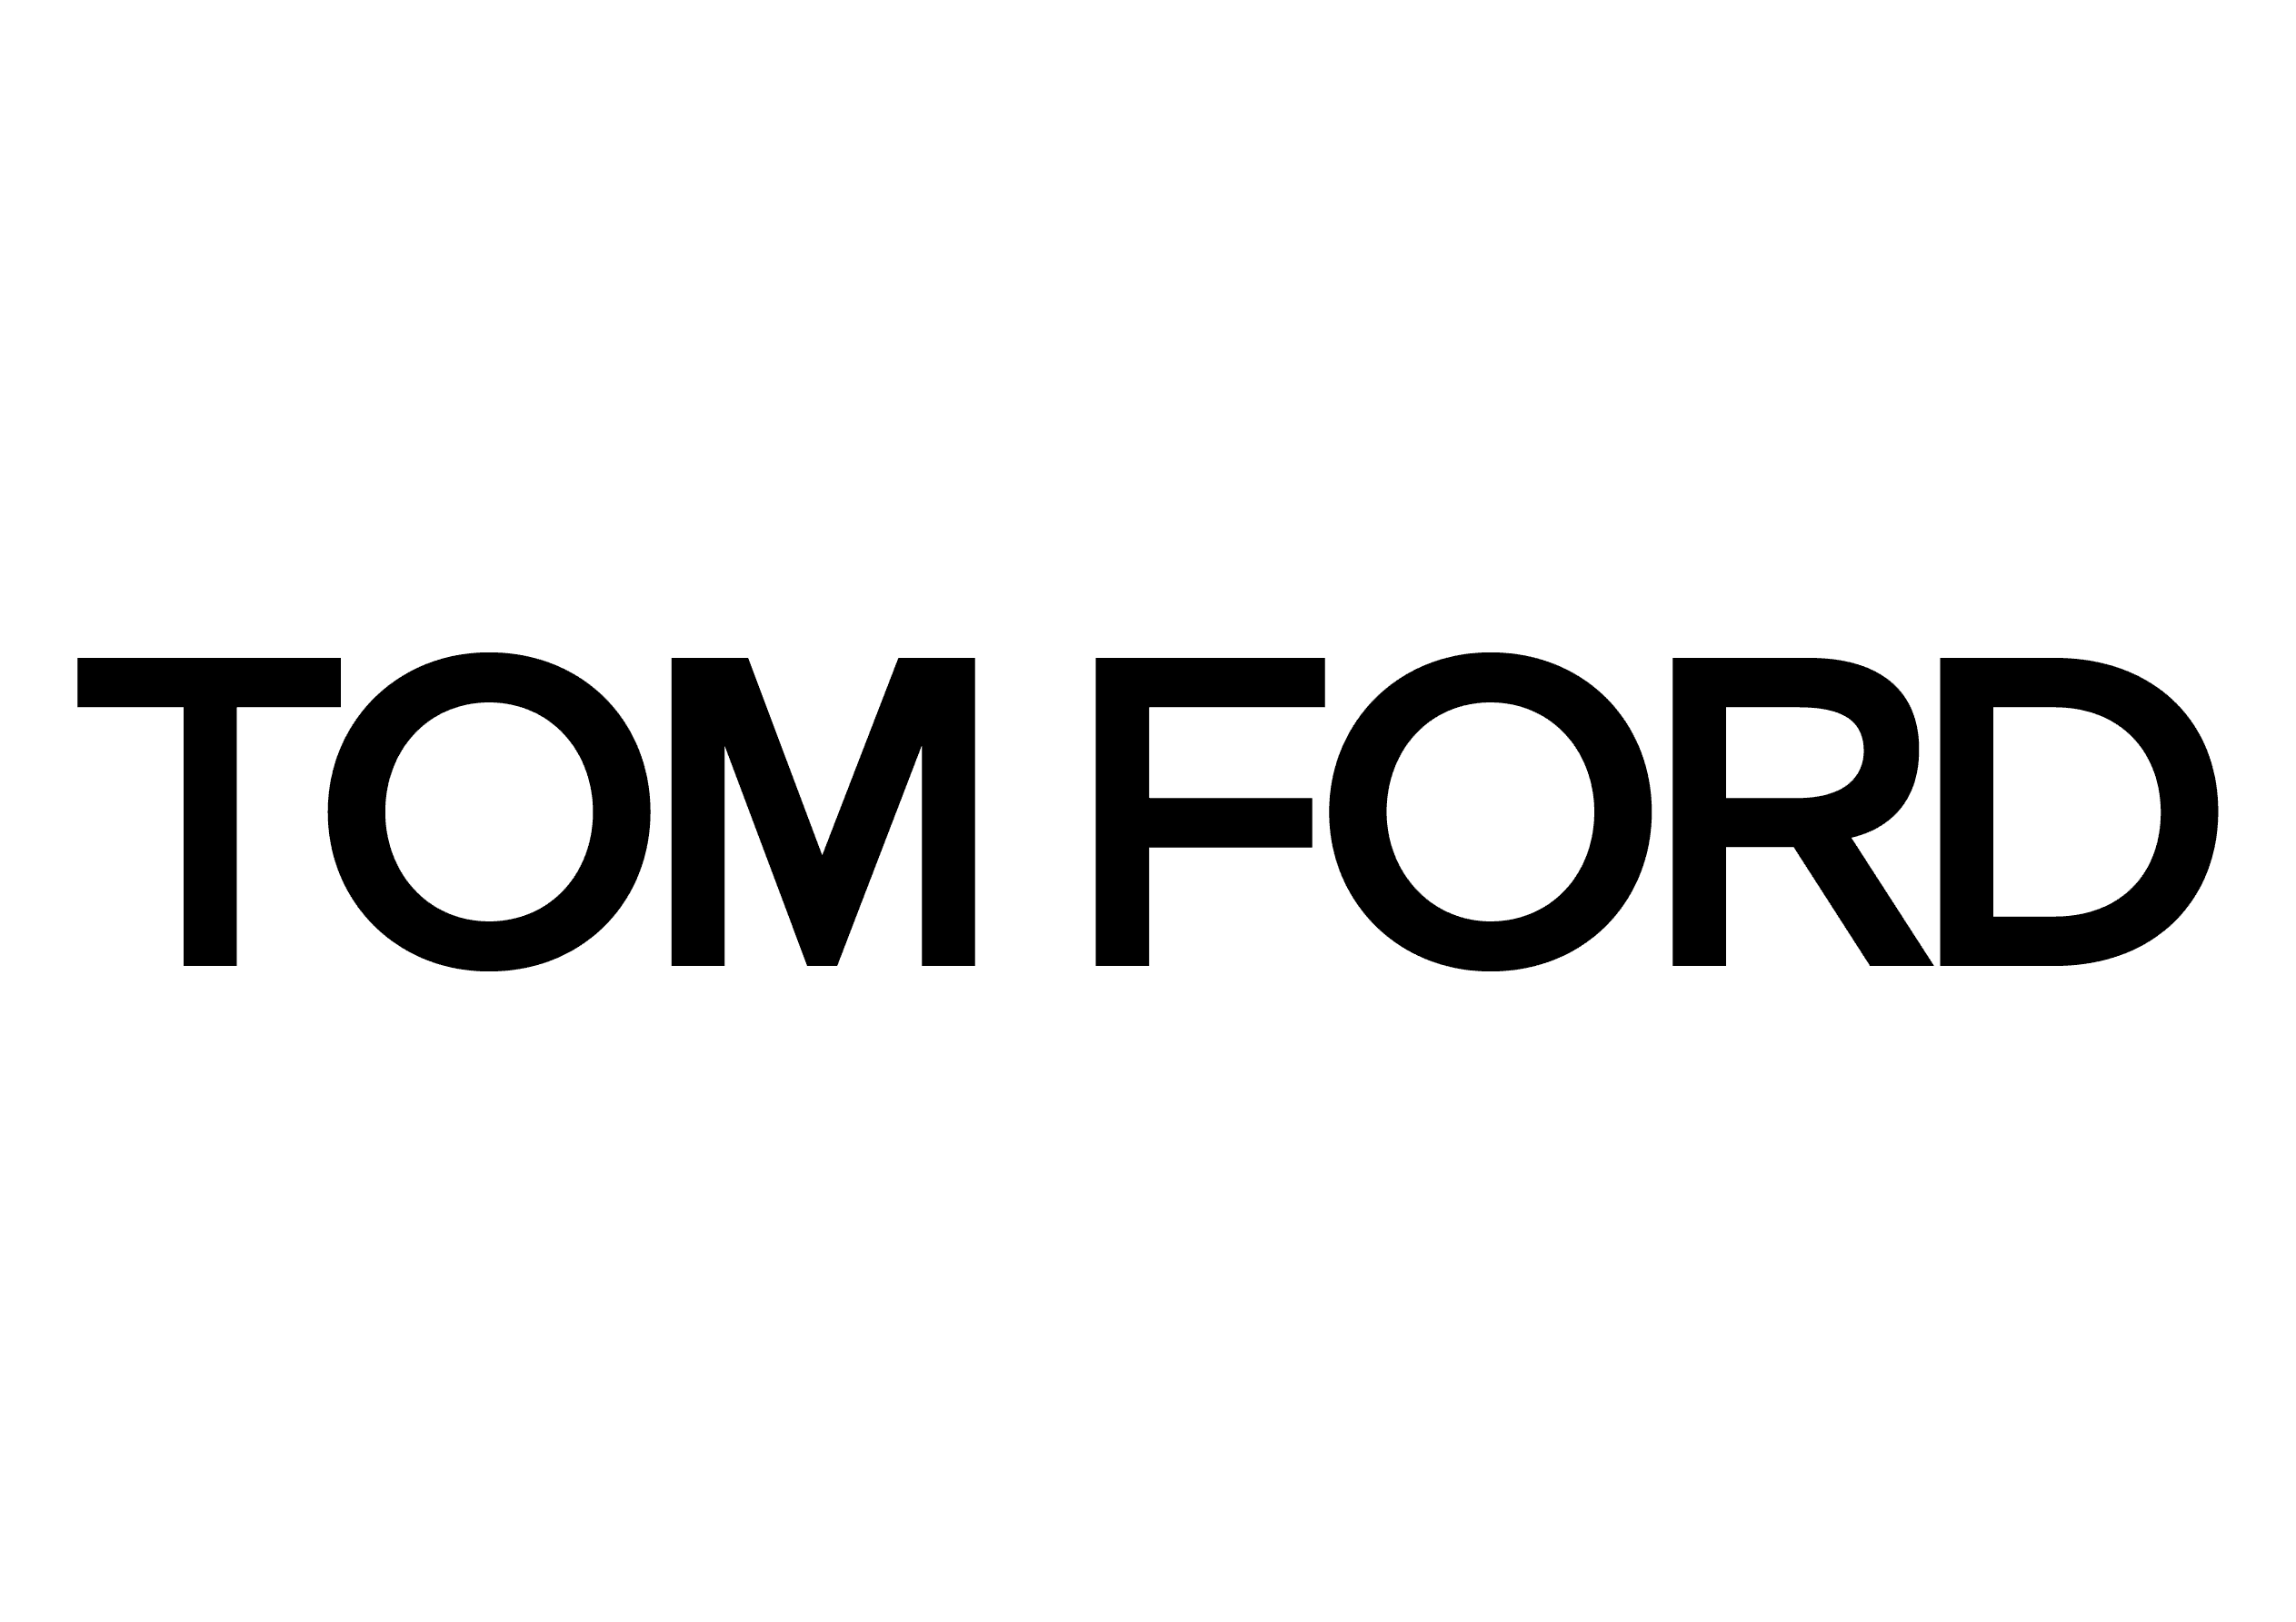 Tom Ford Brillen bei Optiker Gronde, Augsburg. Logo